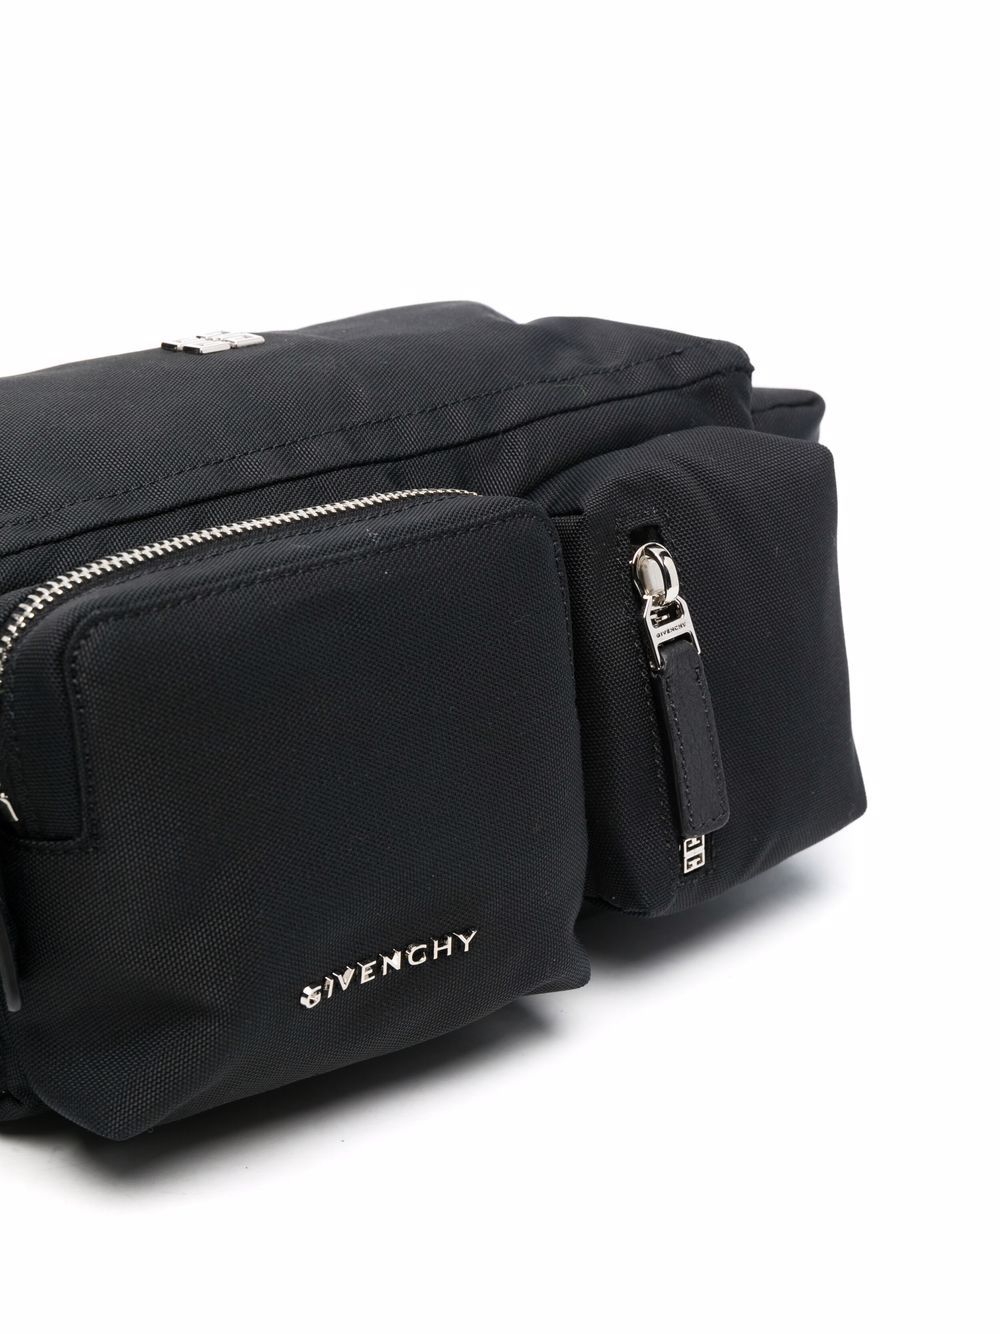 фото Givenchy сумка на плечо с несколькими отделениями